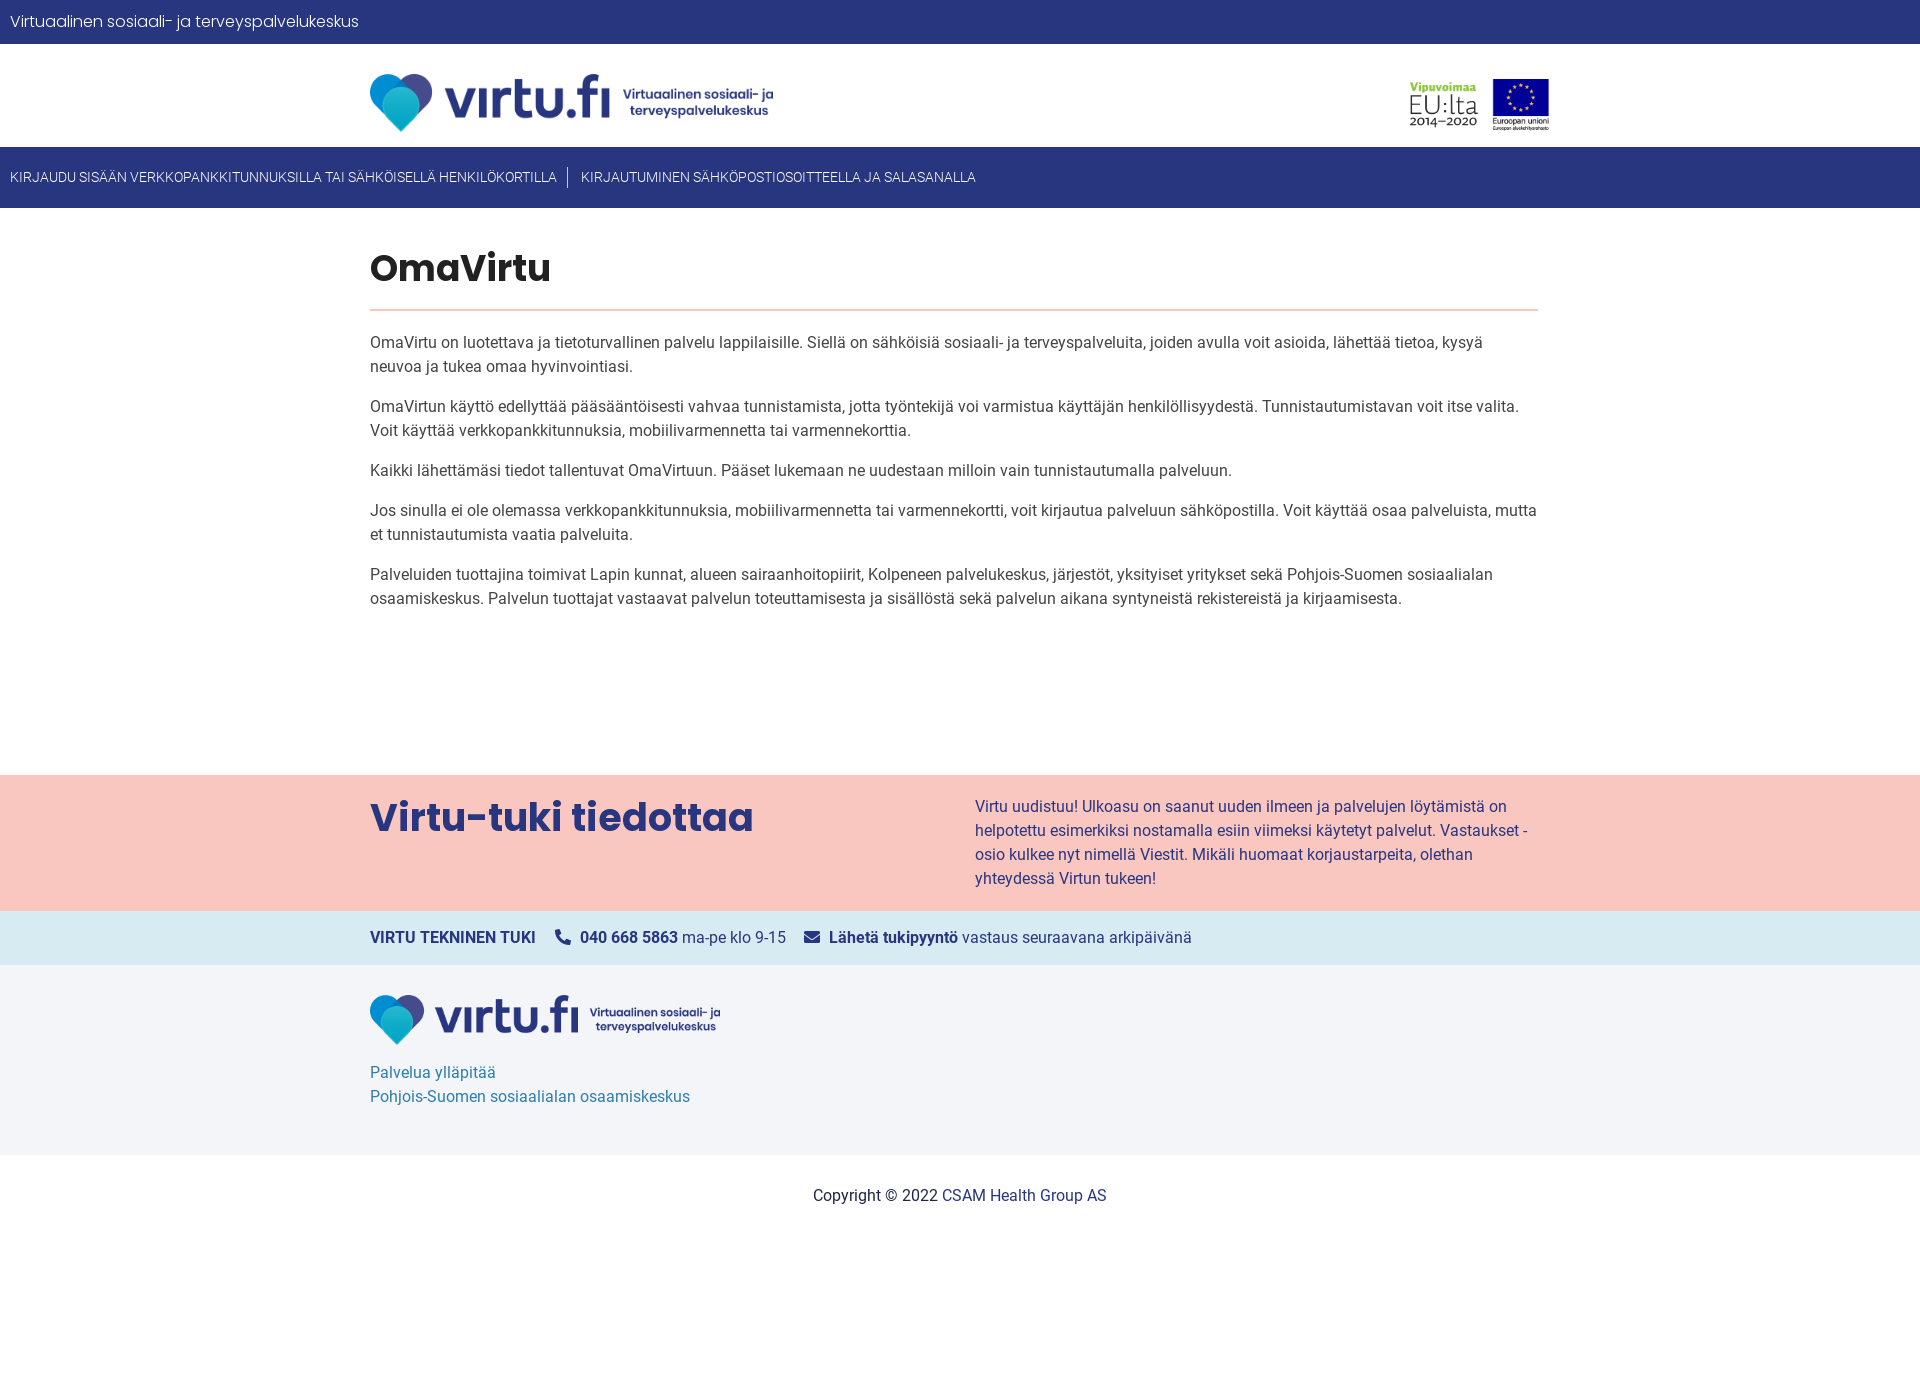 Screenshot for sosiaalijaterveyspalvelut.fi